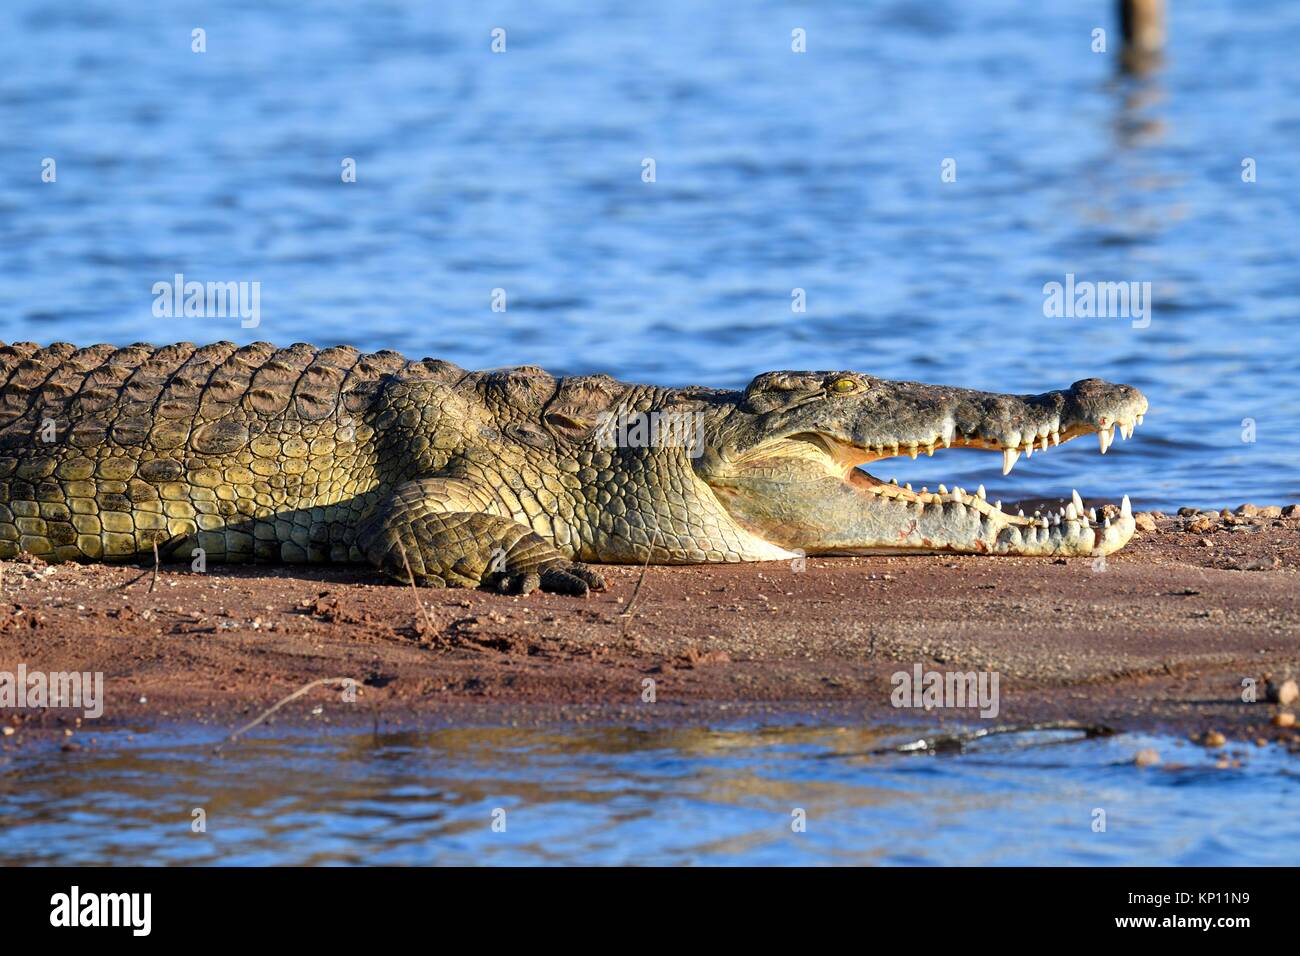 Coccodrillo del Nilo (Crocodylus niloticus) appoggiato sulle rive del lago Kariba con la sua ganascia aperta. Matusadona National Park, Zimbabwe. Foto Stock